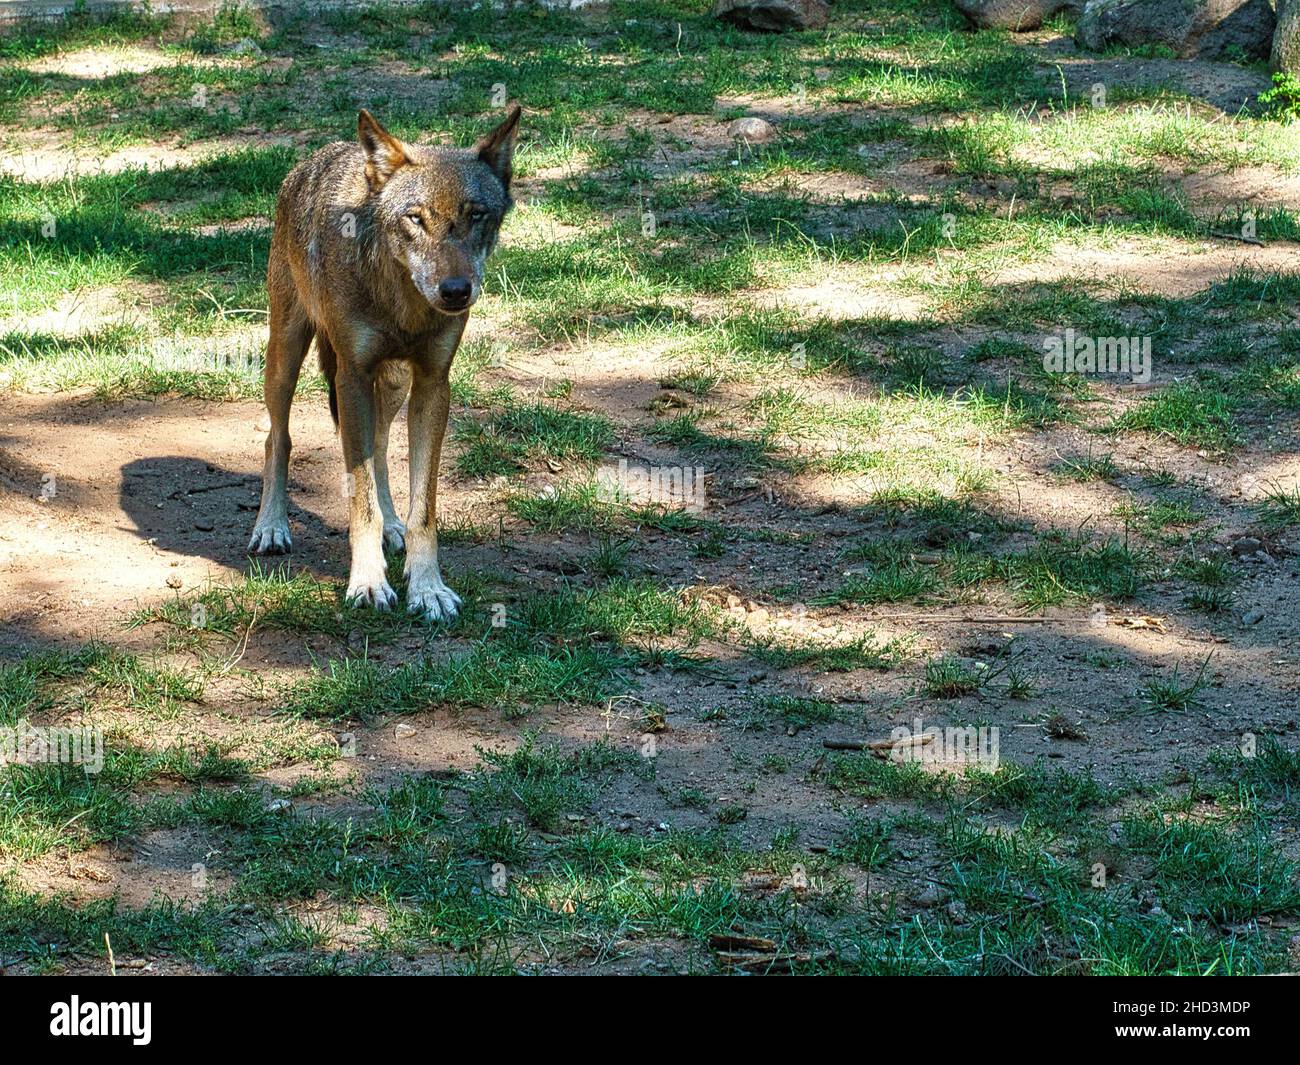 lupo mongolo con contatto visivo con l'osservatore. predatore rilassato fotografato individualmente. il lupo è una specie minacciata Foto Stock